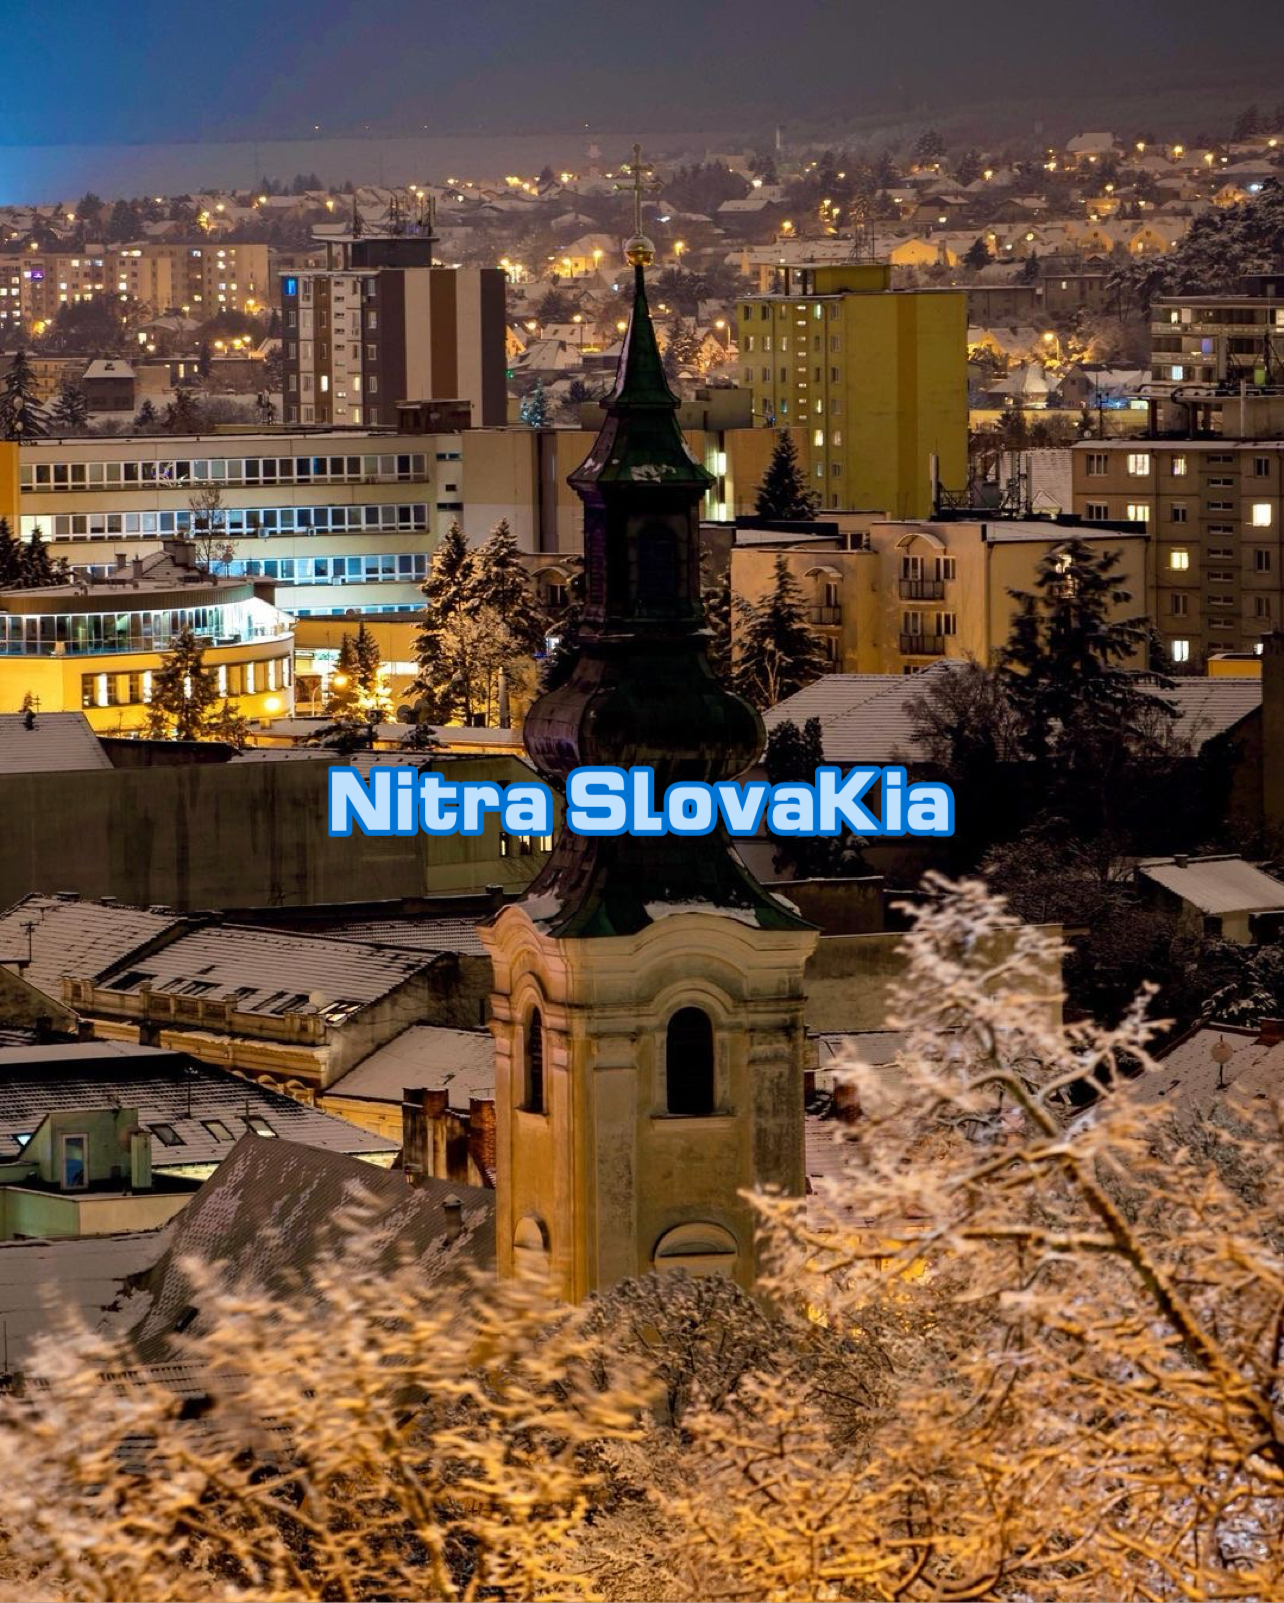 Nitra SlovaKia